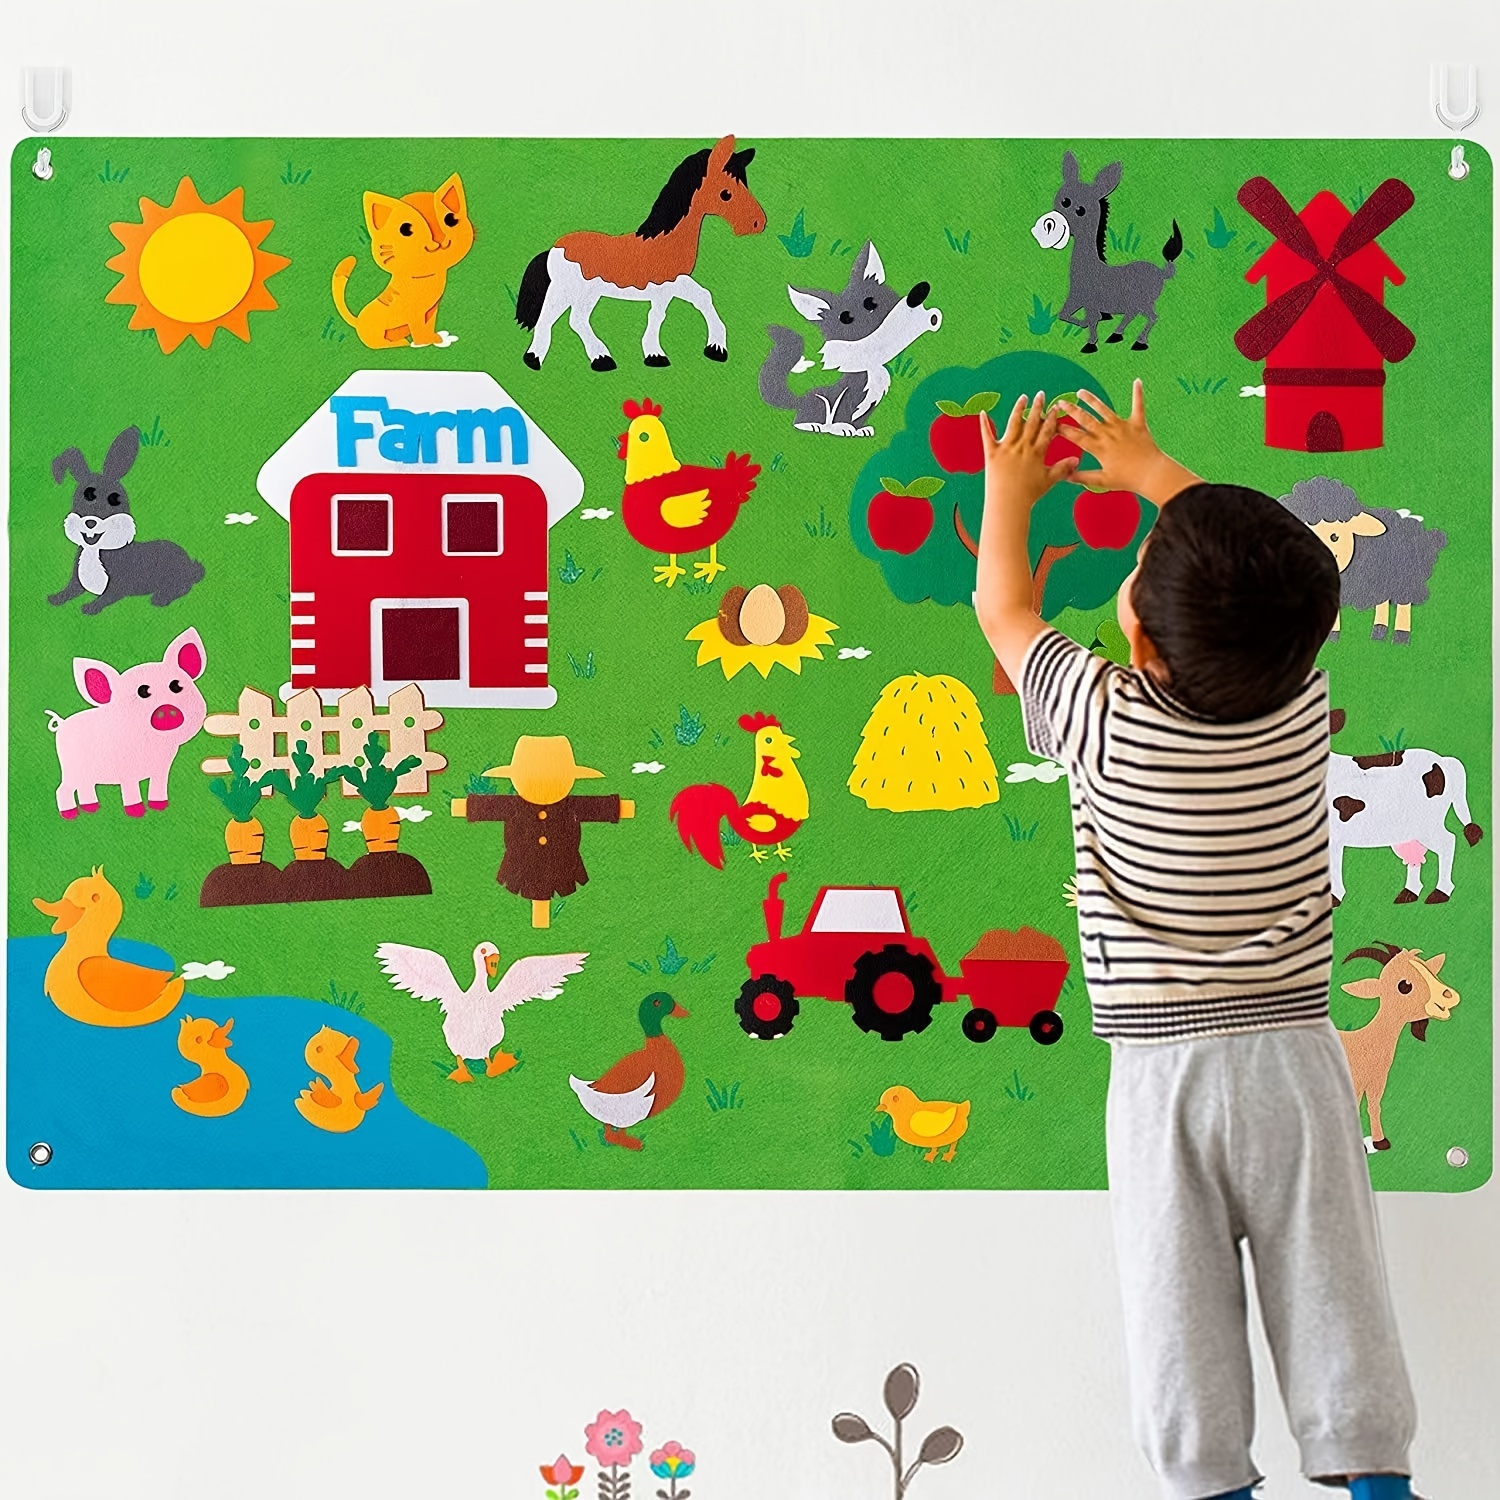 Pannello gioco fattoria Montessori - Bambini - Giocattoli - di La